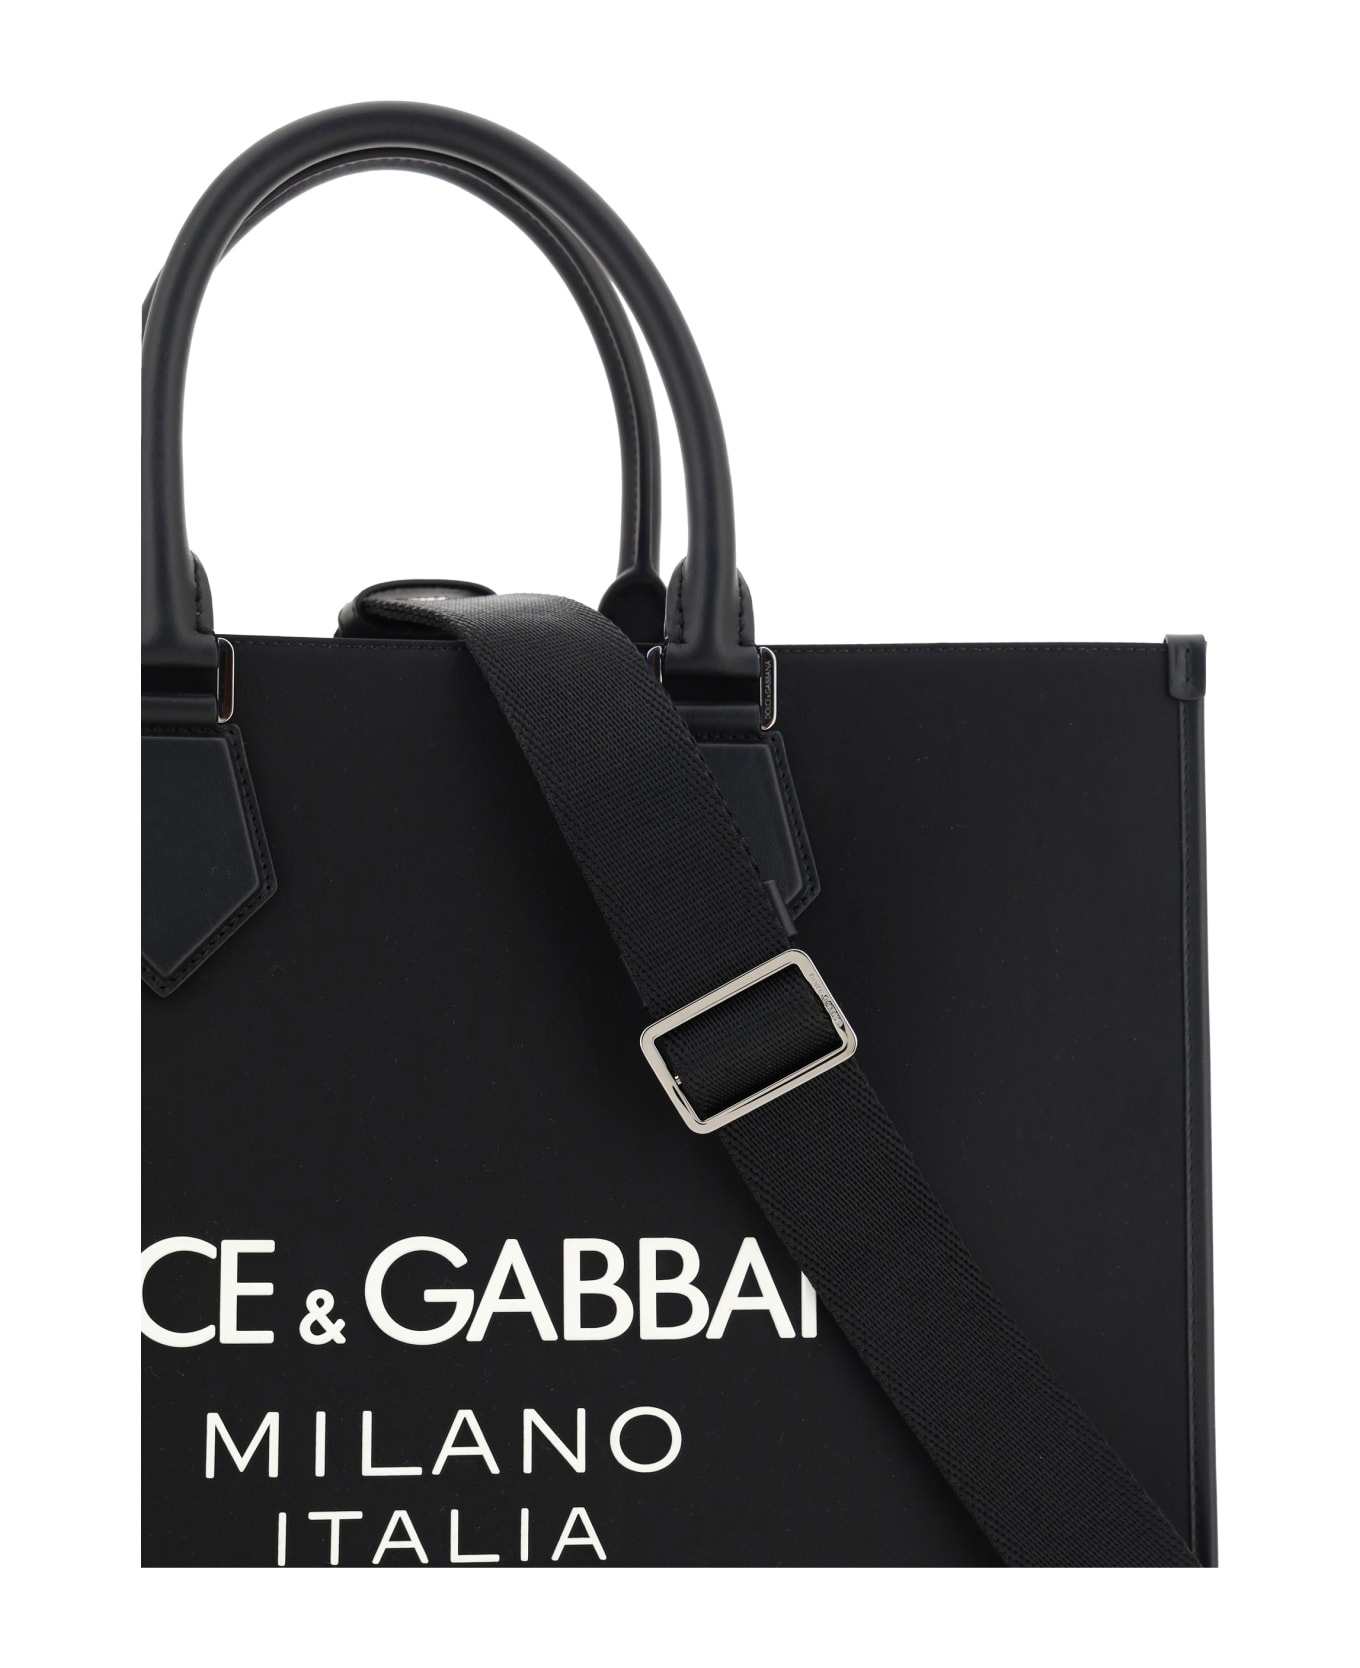 Dolce & Gabbana Tote Bag - Nero/nero